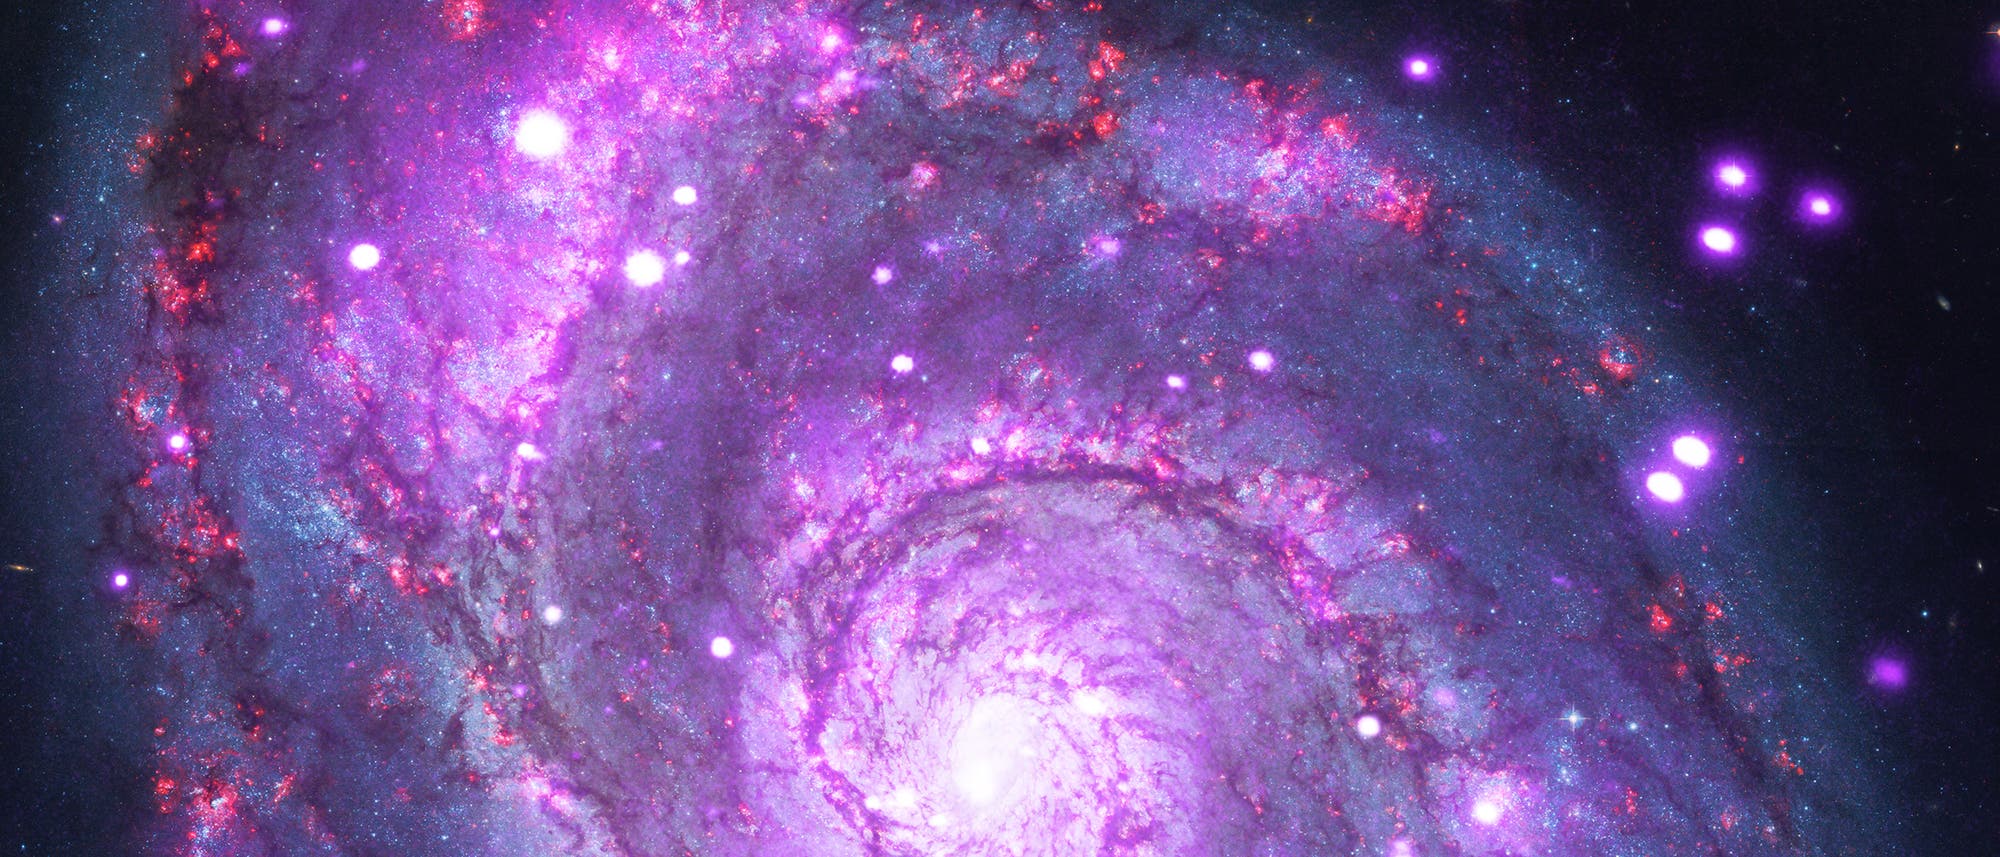 Kompositbild der Whirlpool Galaxie M51